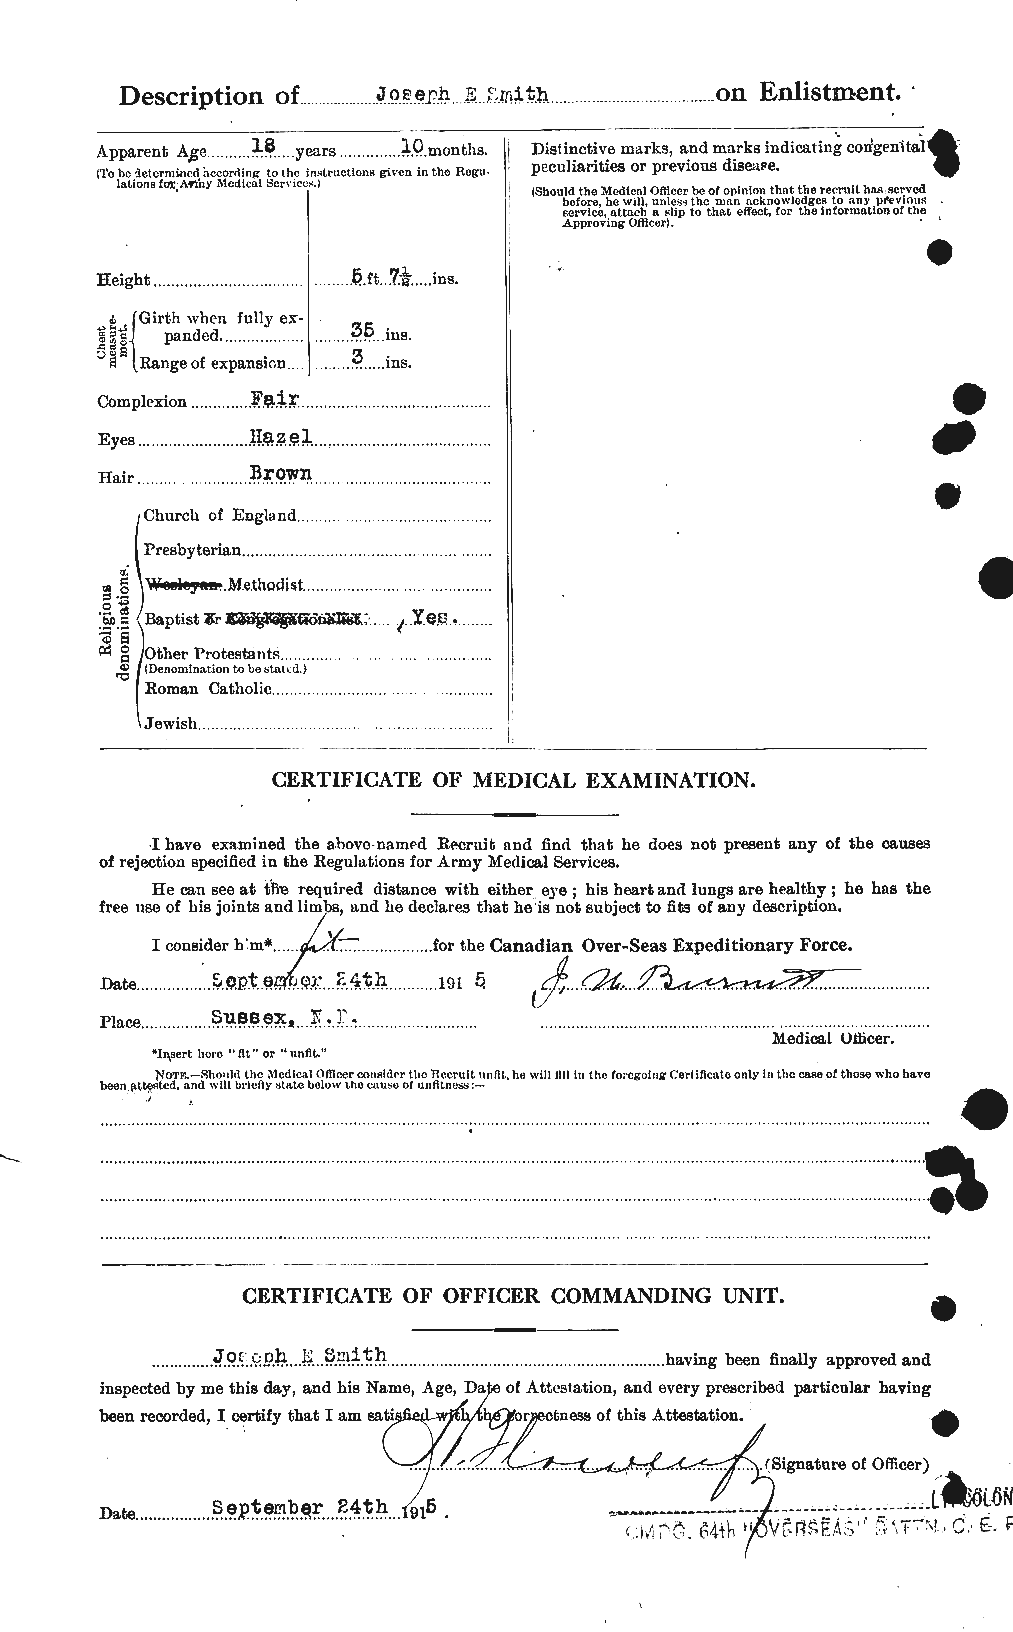 Dossiers du Personnel de la Première Guerre mondiale - CEC 622081b